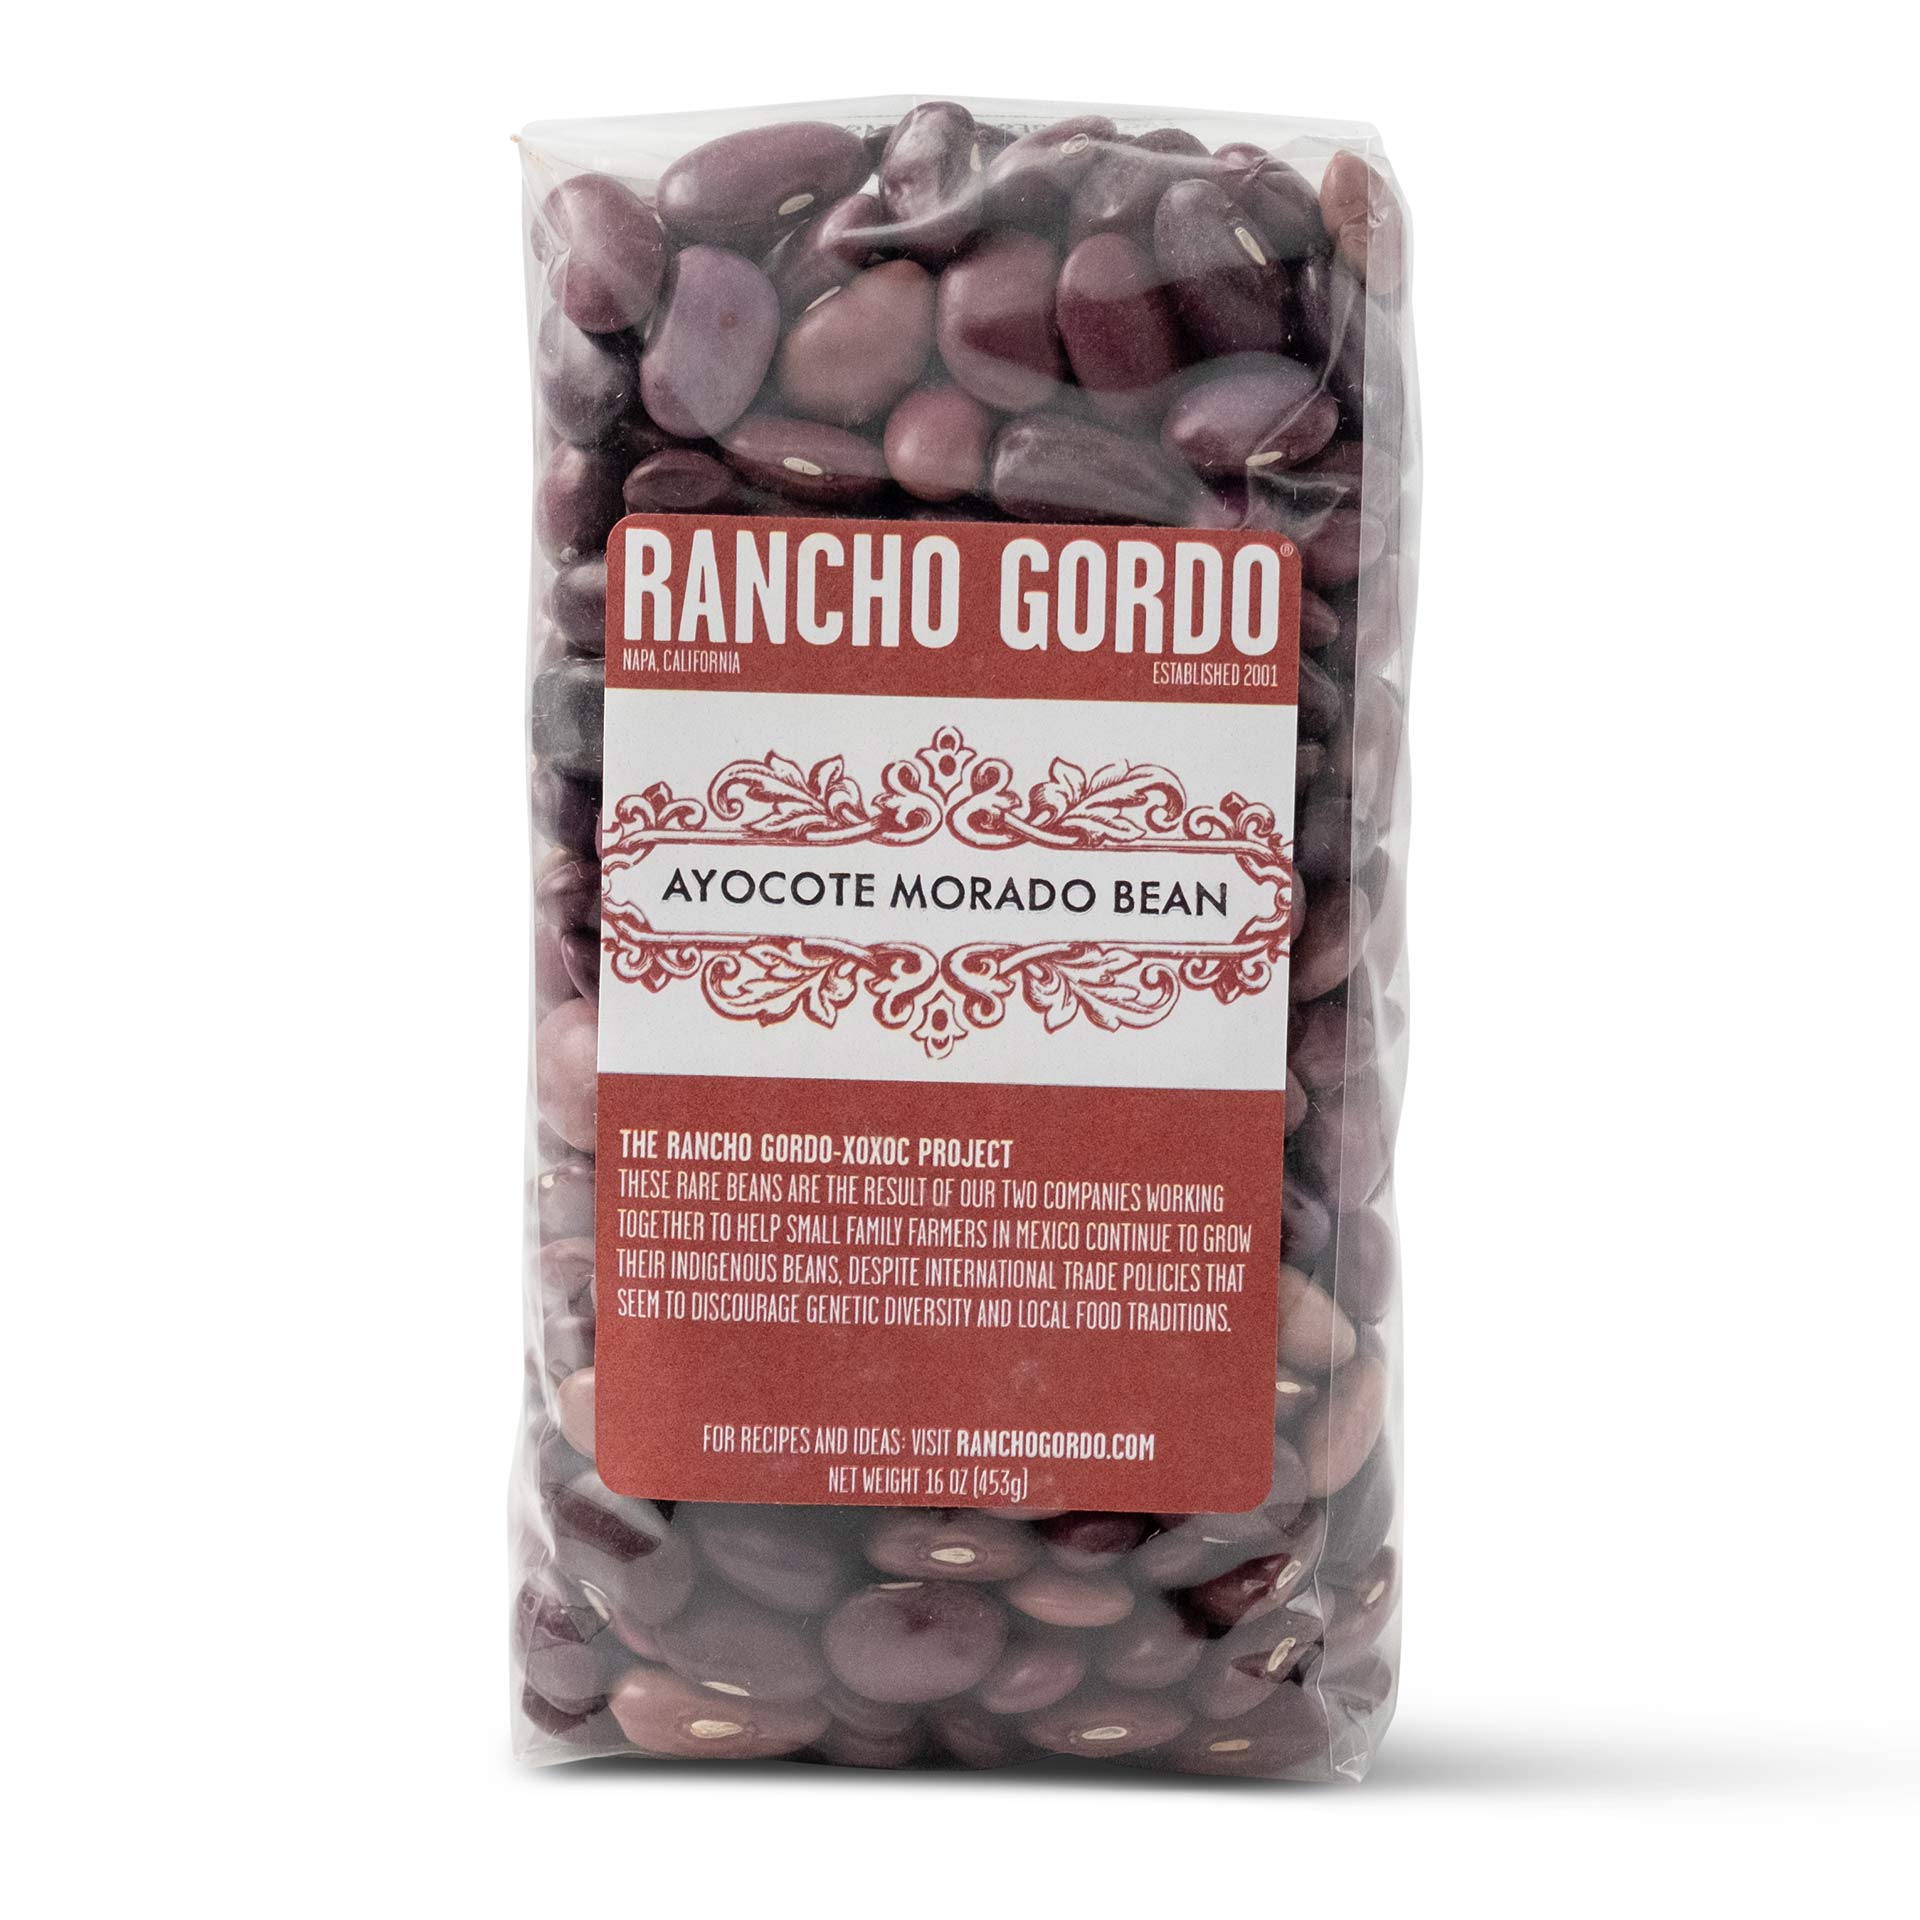 Rancho Gordo Ayocote Morado Beans 12044275